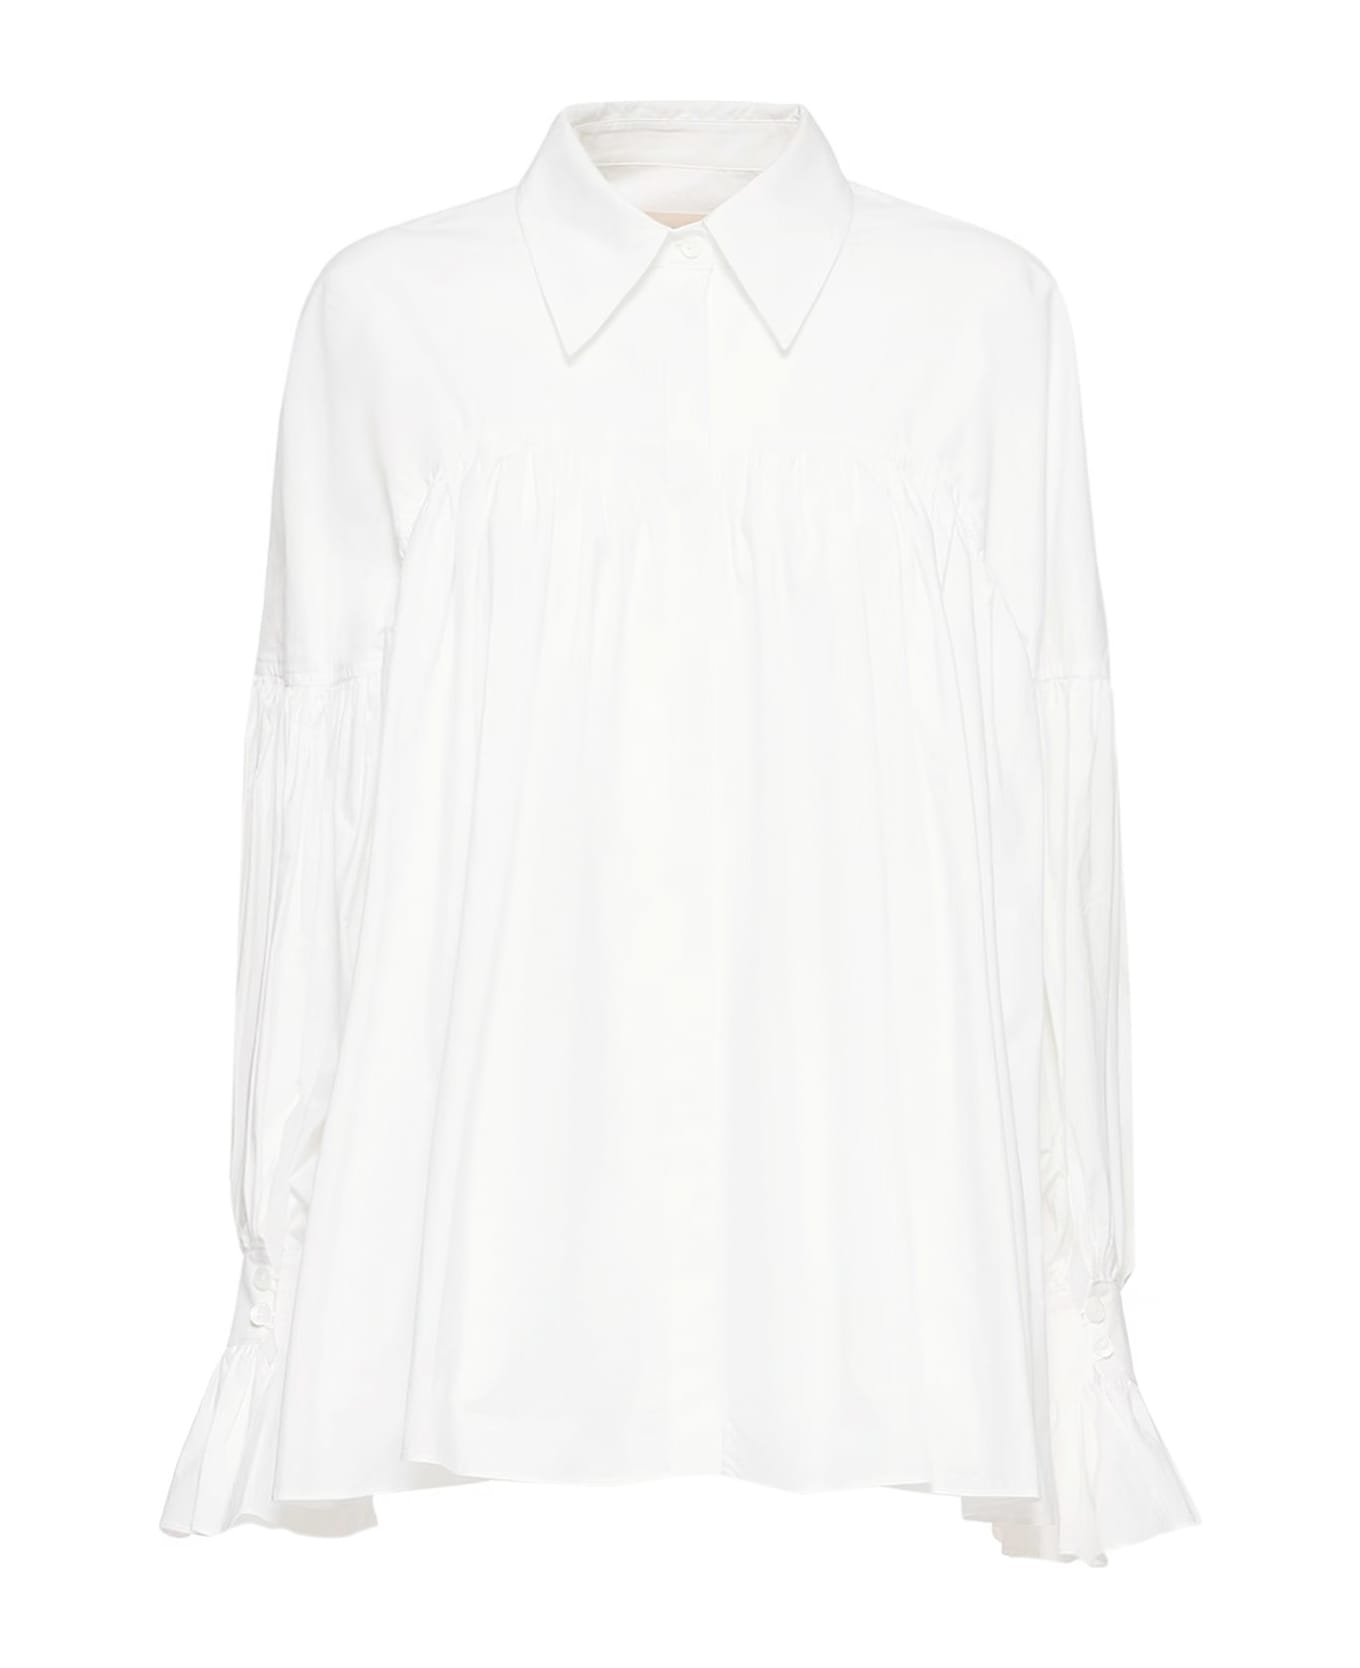 Khaite Shirt - White